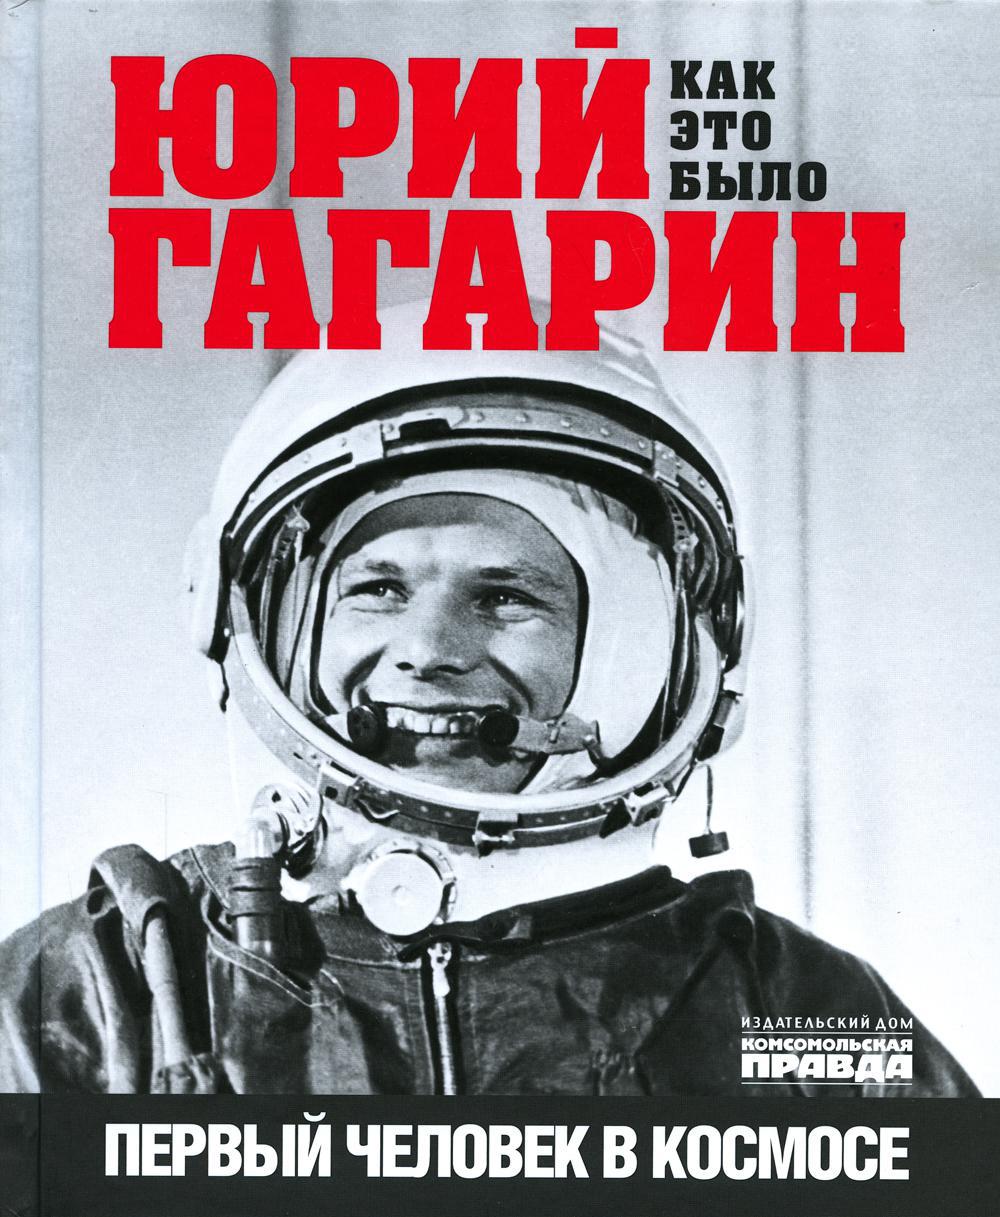 Юрий Гагарин. Первый человек в космосеэ. Как это было